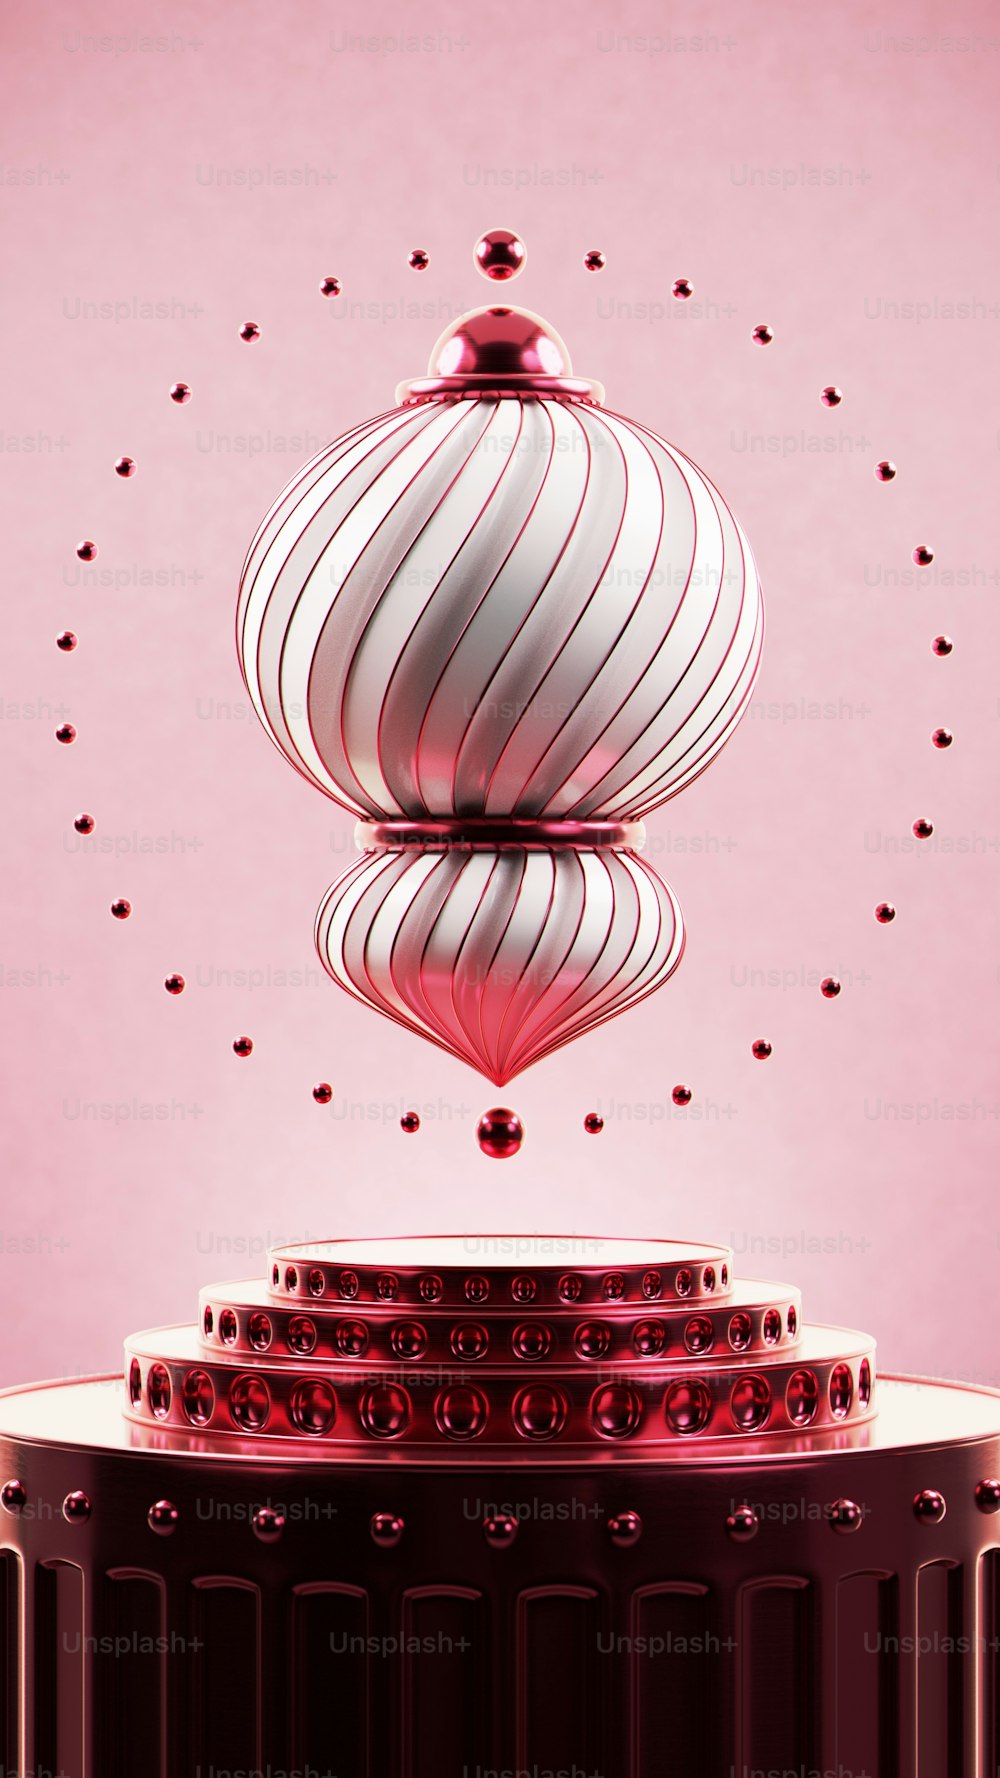 un objet circulaire rouge et blanc avec un fond rose